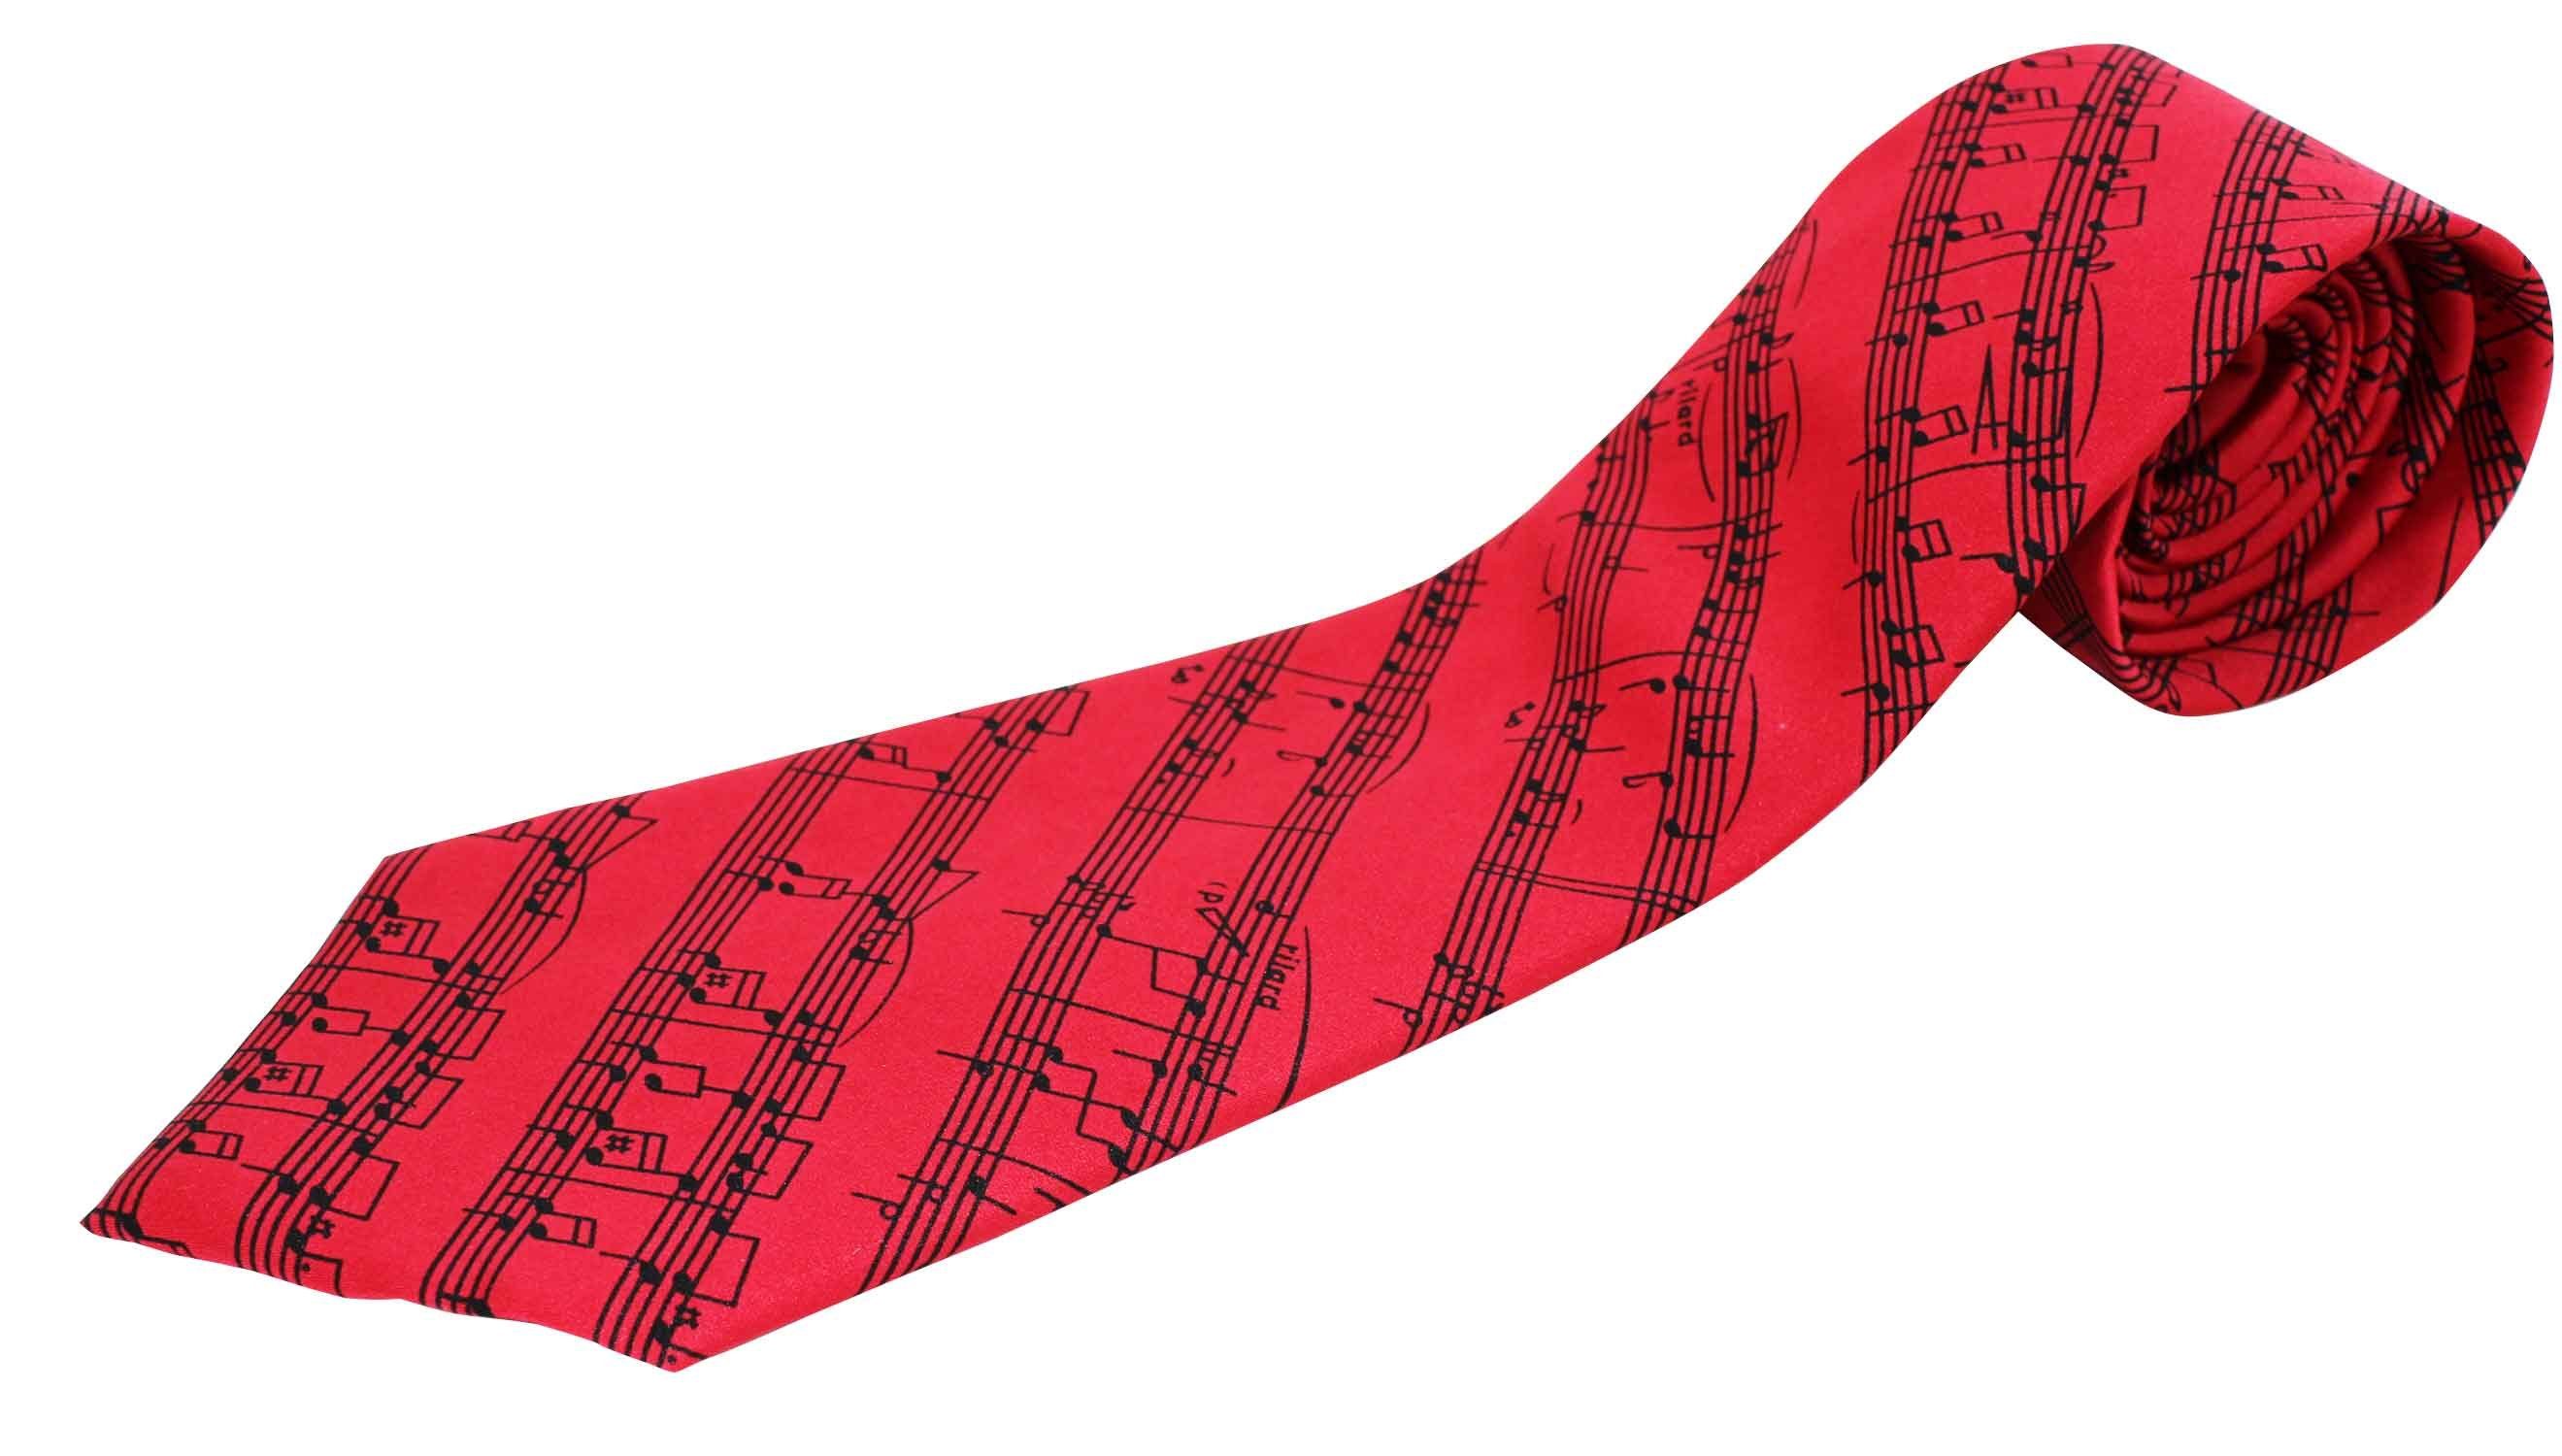 Notenlinien rot/schwarz für Krawatte Musiker mugesh Krawatte